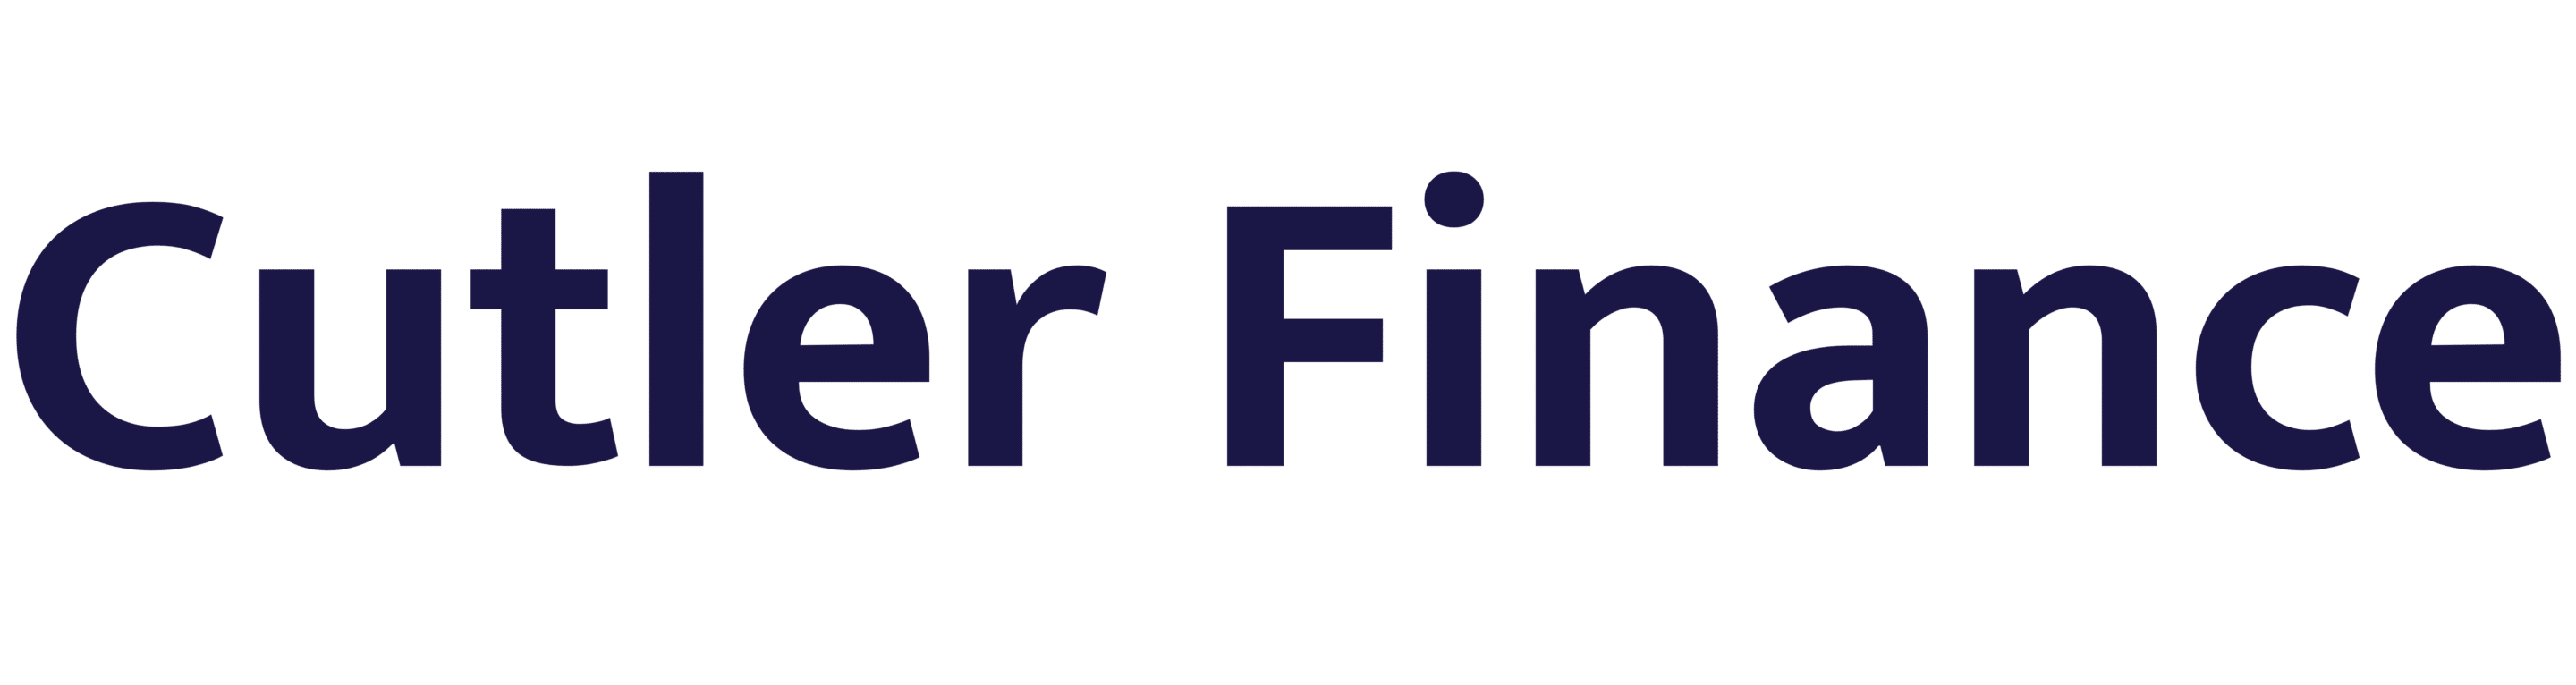 Cutler Finance logo